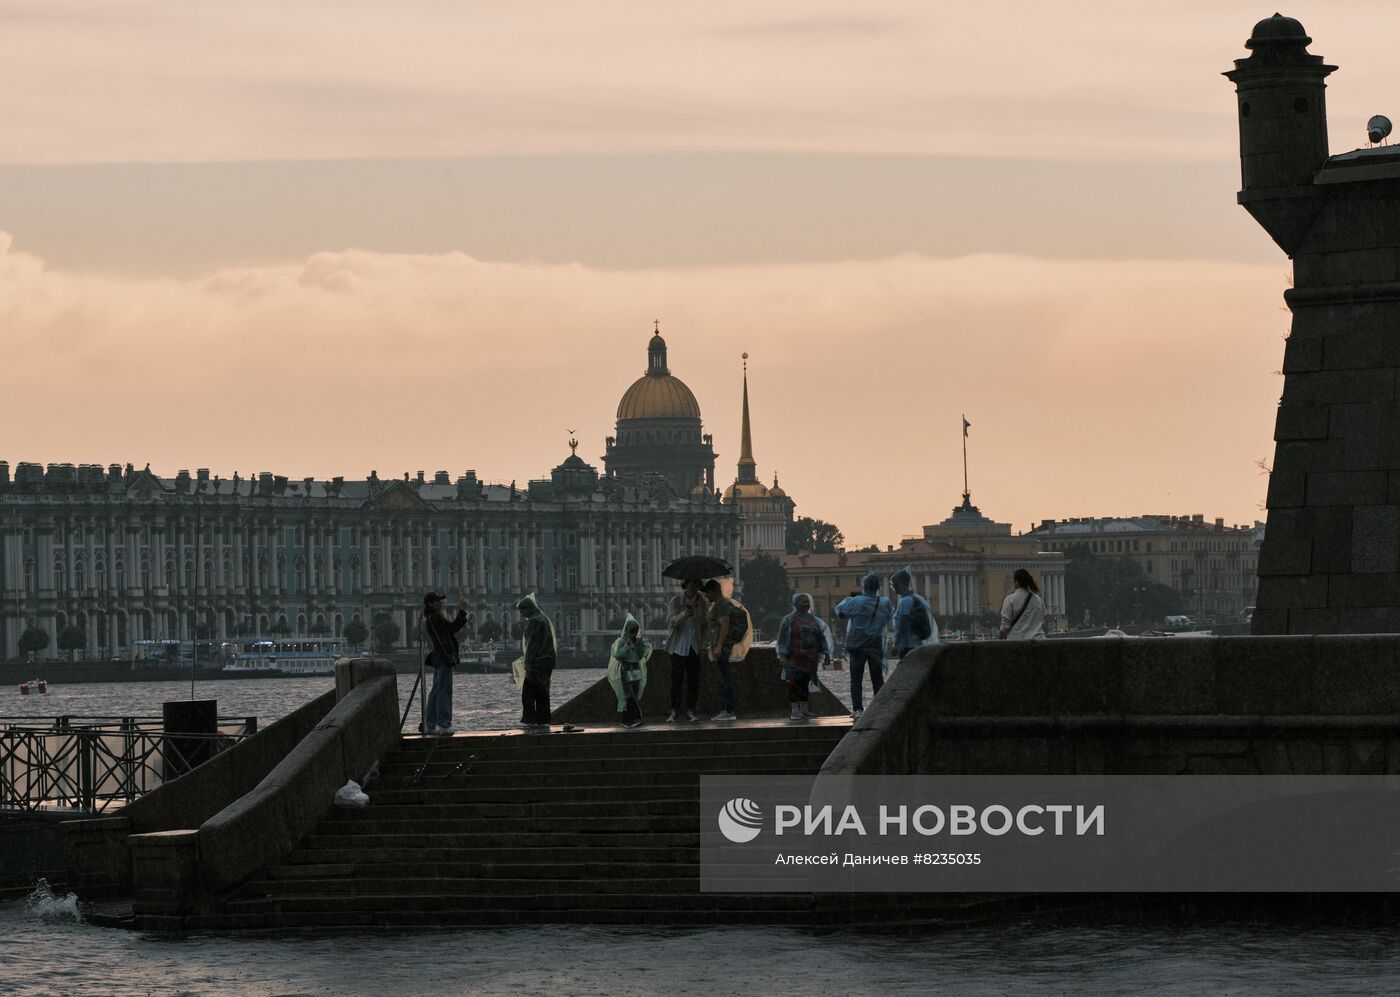 Циклон "Зельда" пришел в Санкт-Петербург